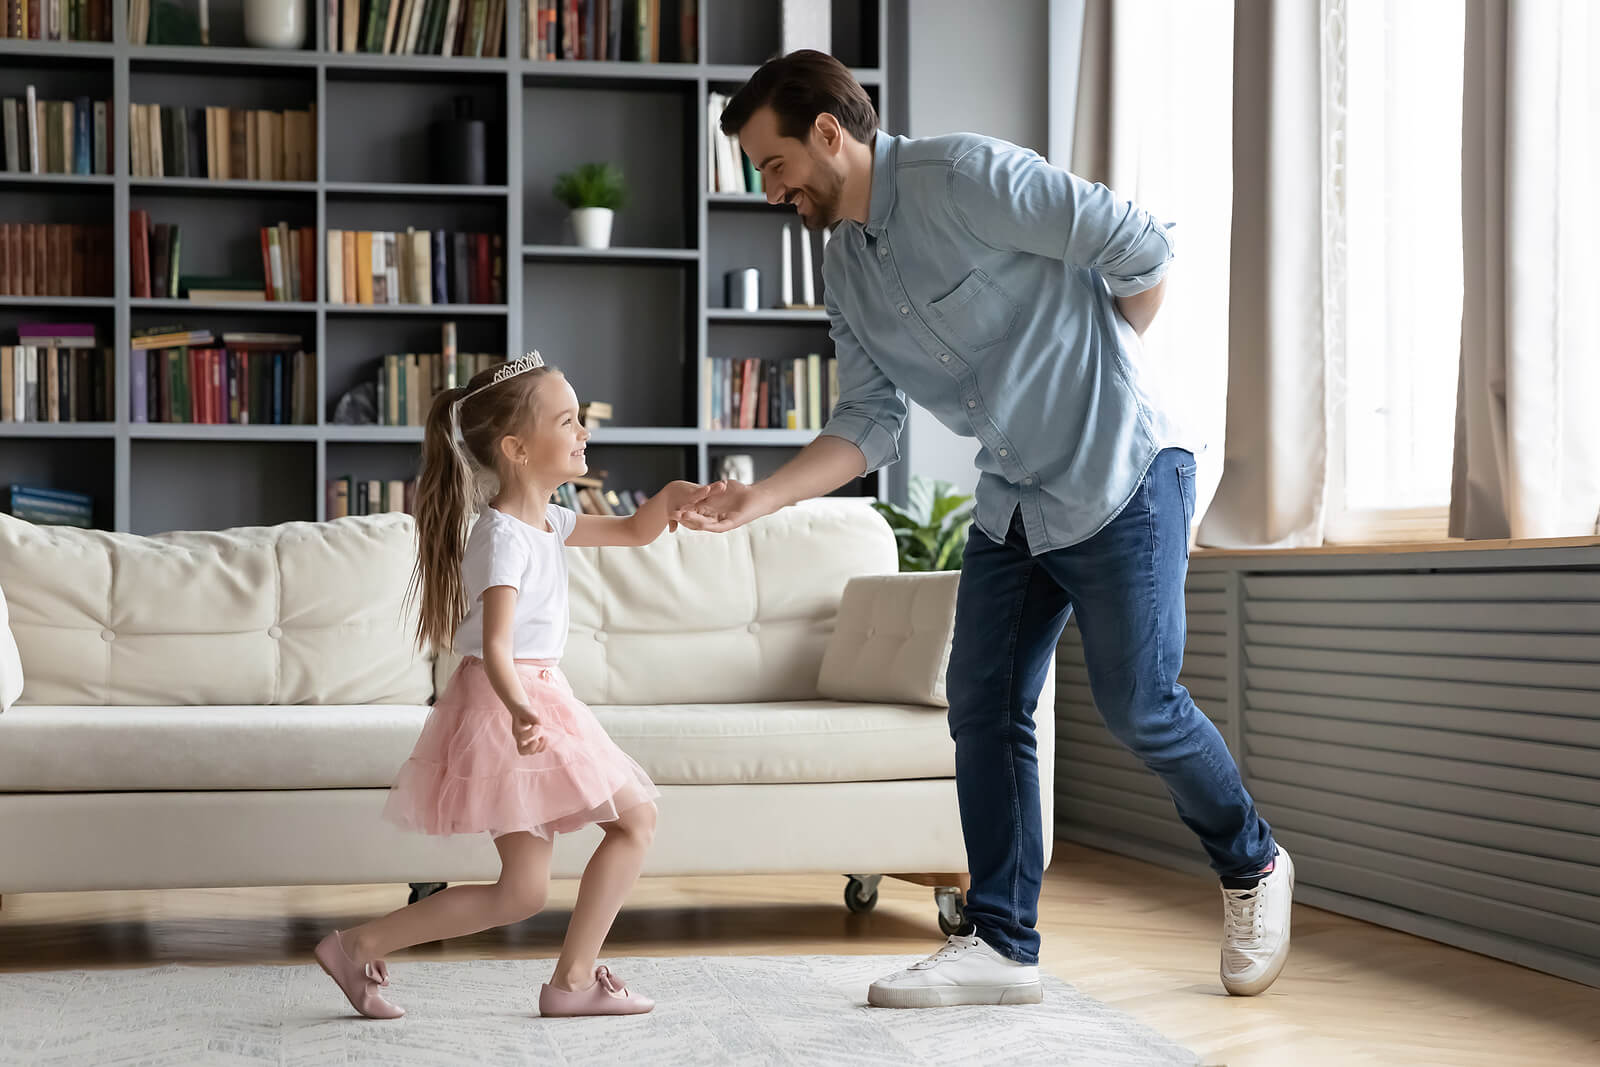 Padre e hija bailando y aprendiendo buenos modales y cortesía.